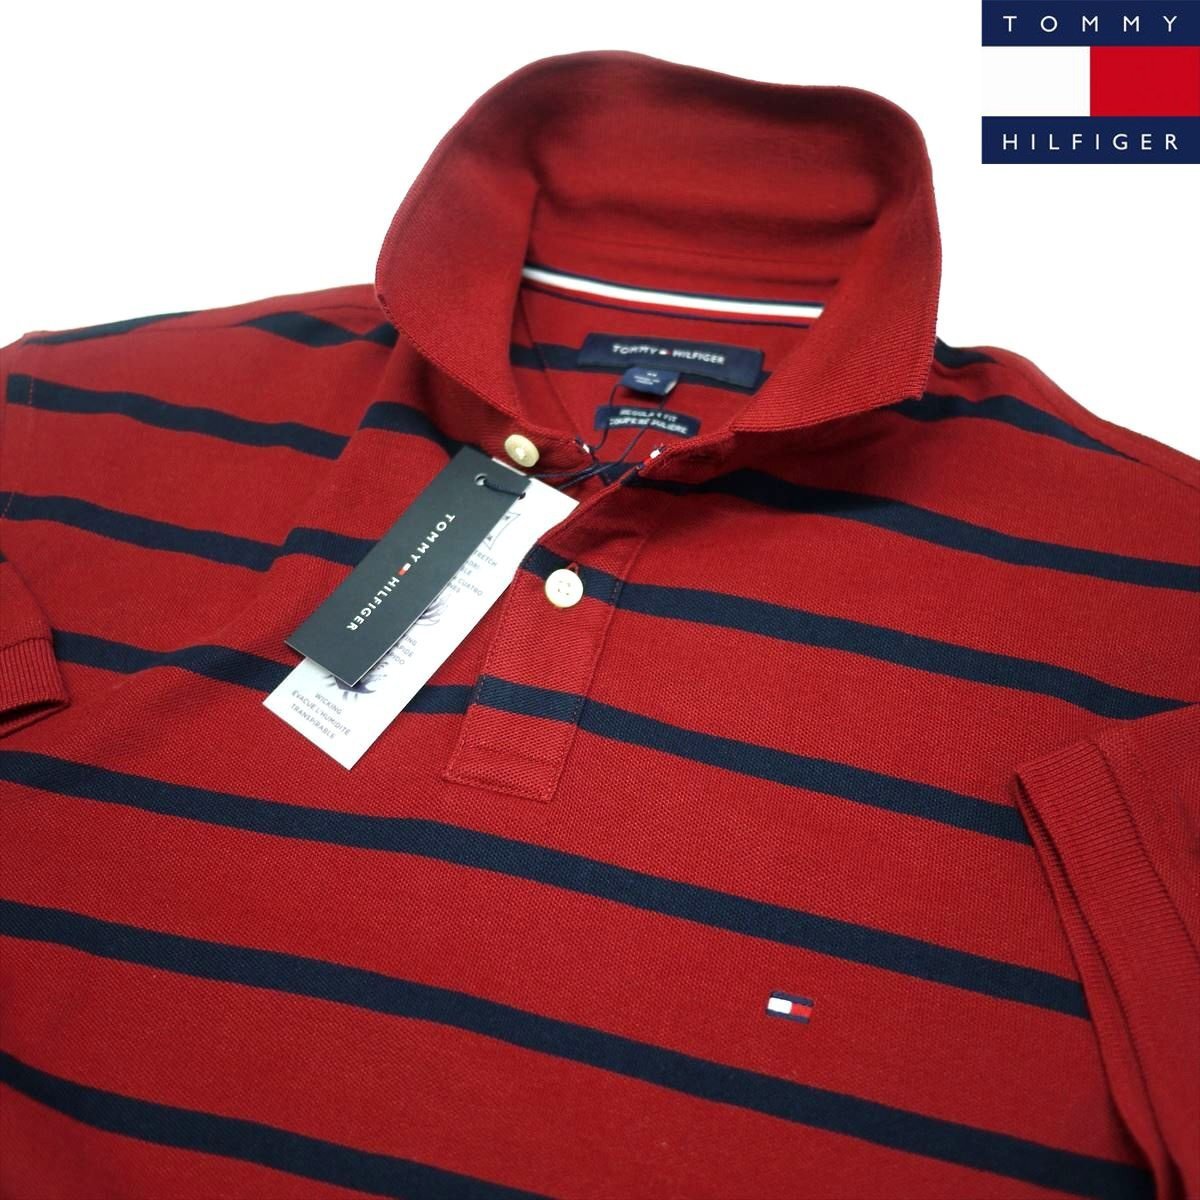  новый товар Tommy Hilfiger скорость . водонепроницаемый 4 person направление стрейч рубашка-поло (L) красный x темно-синий окантовка Golf тоже!TOMMY HILFIGER USA модель /ba4